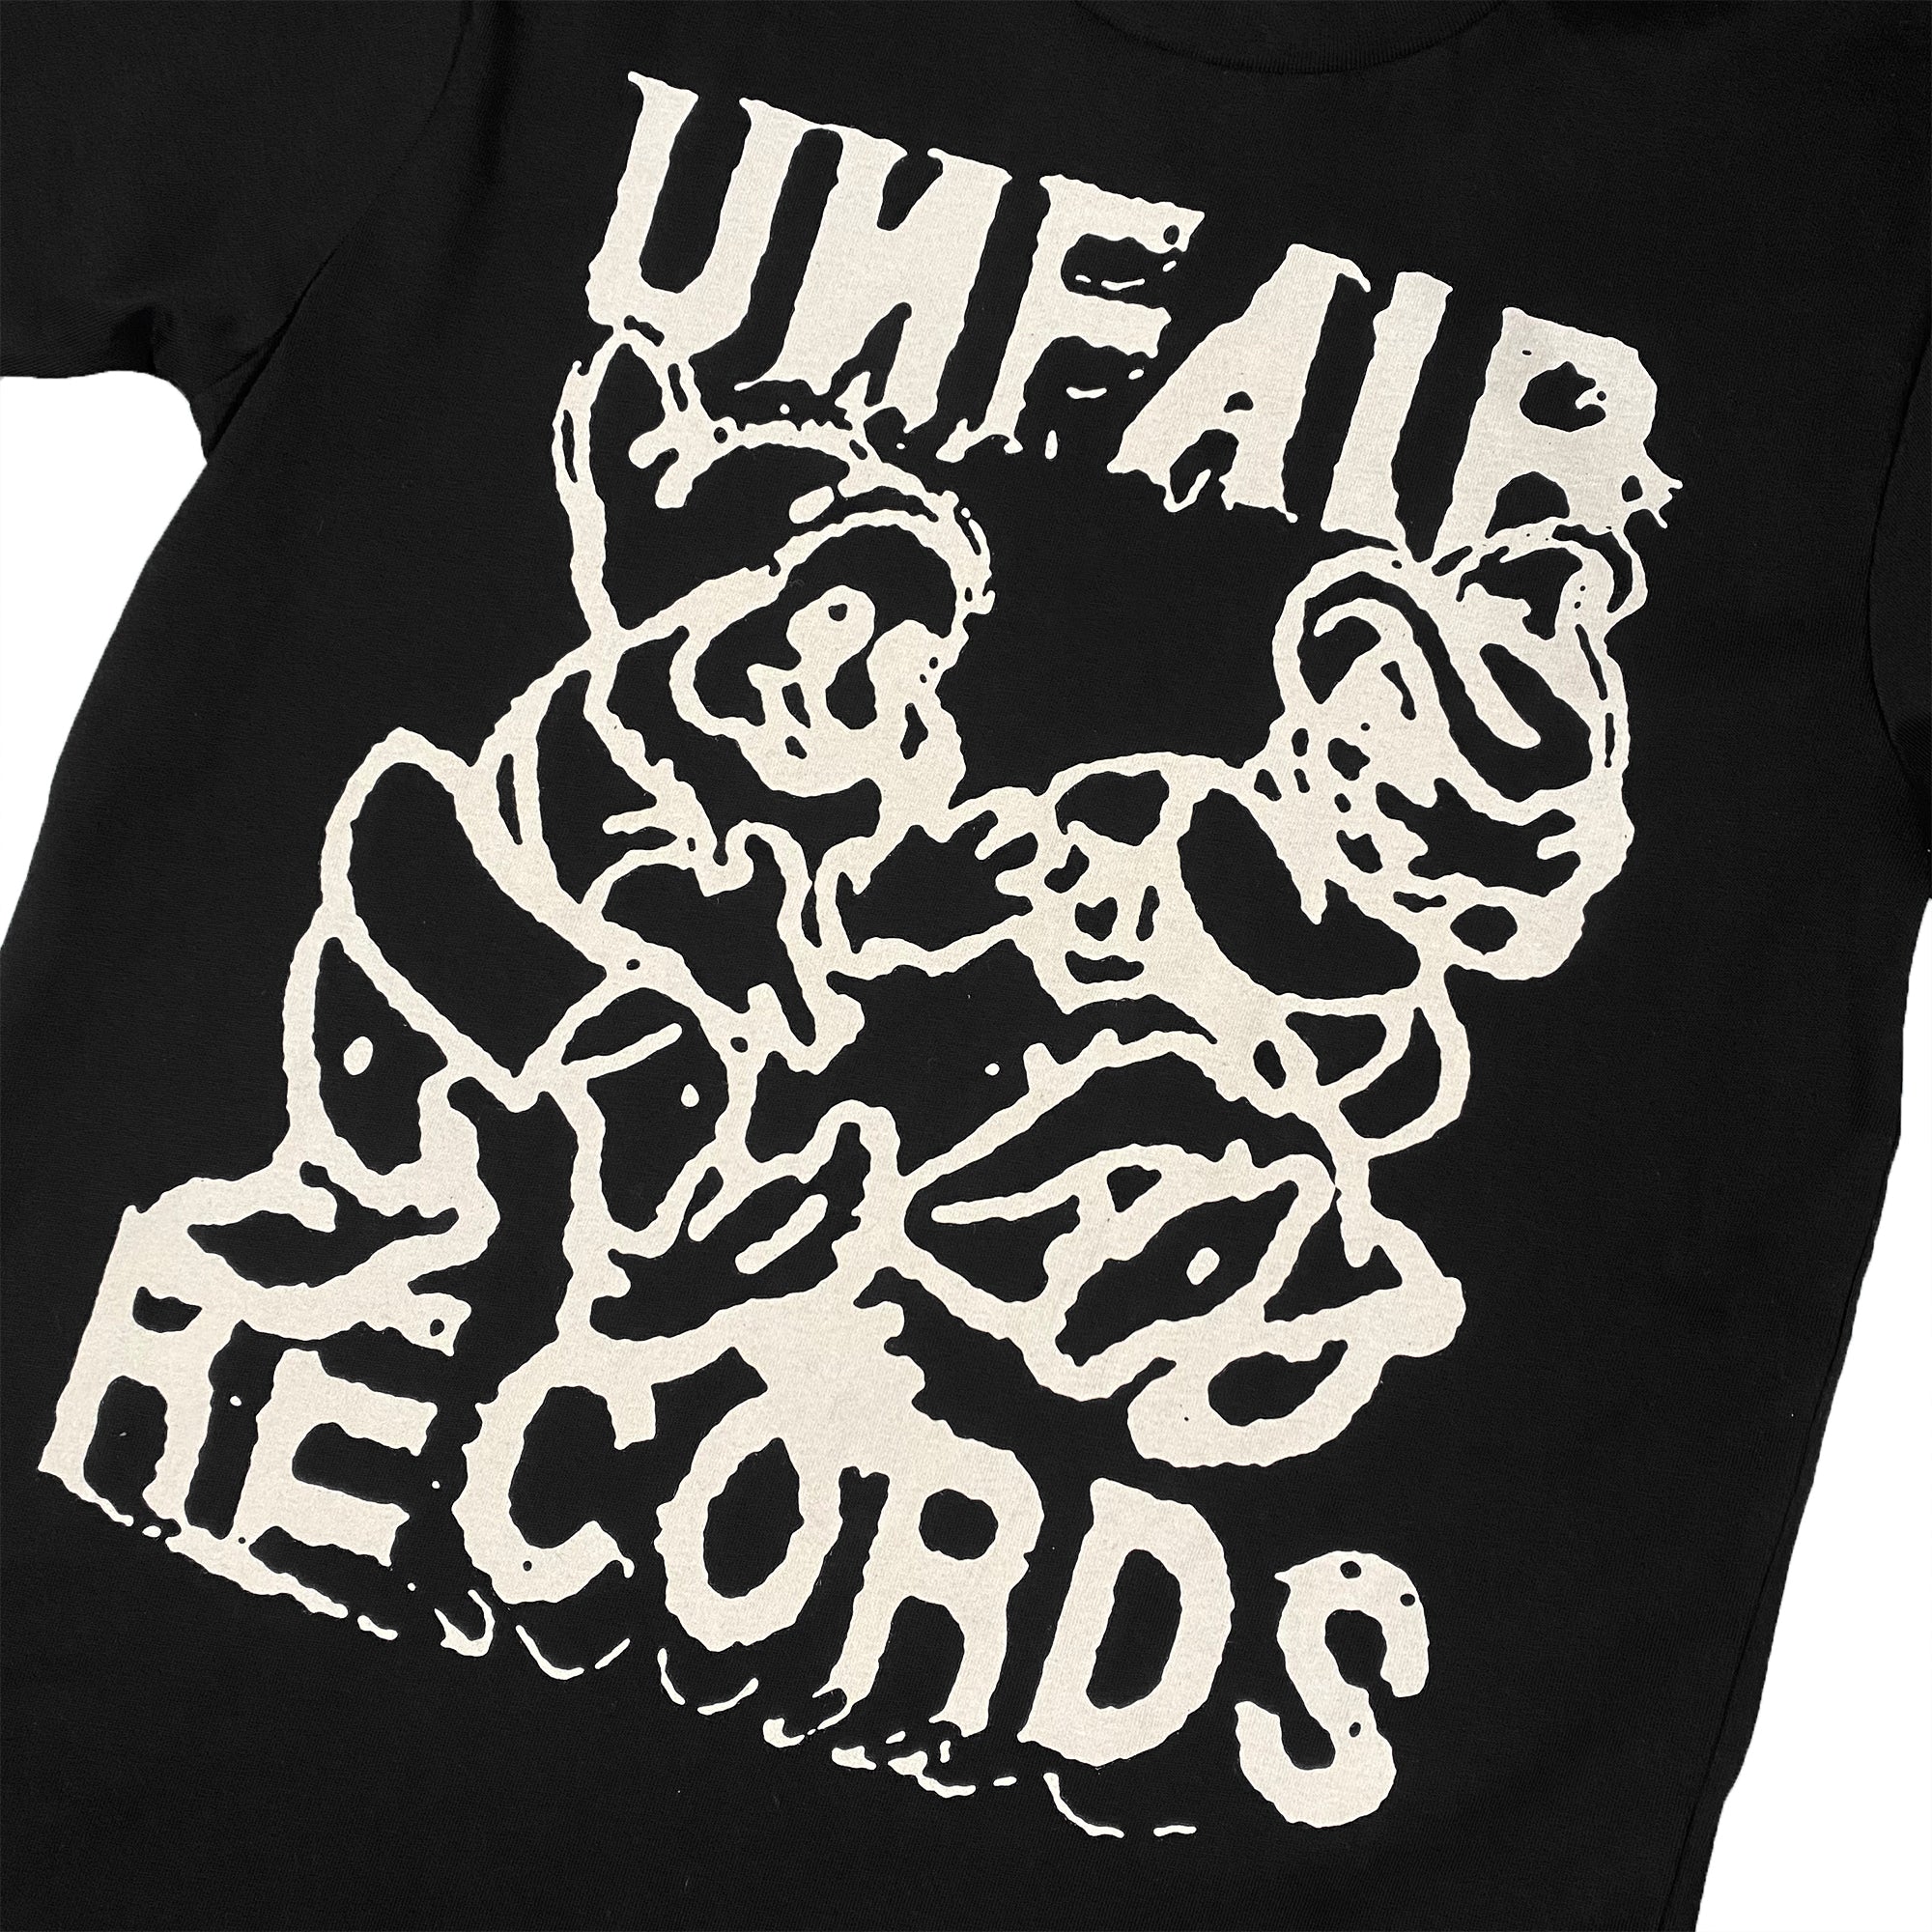 UNFAIR RECORDS T-SHIRT (BLACK)